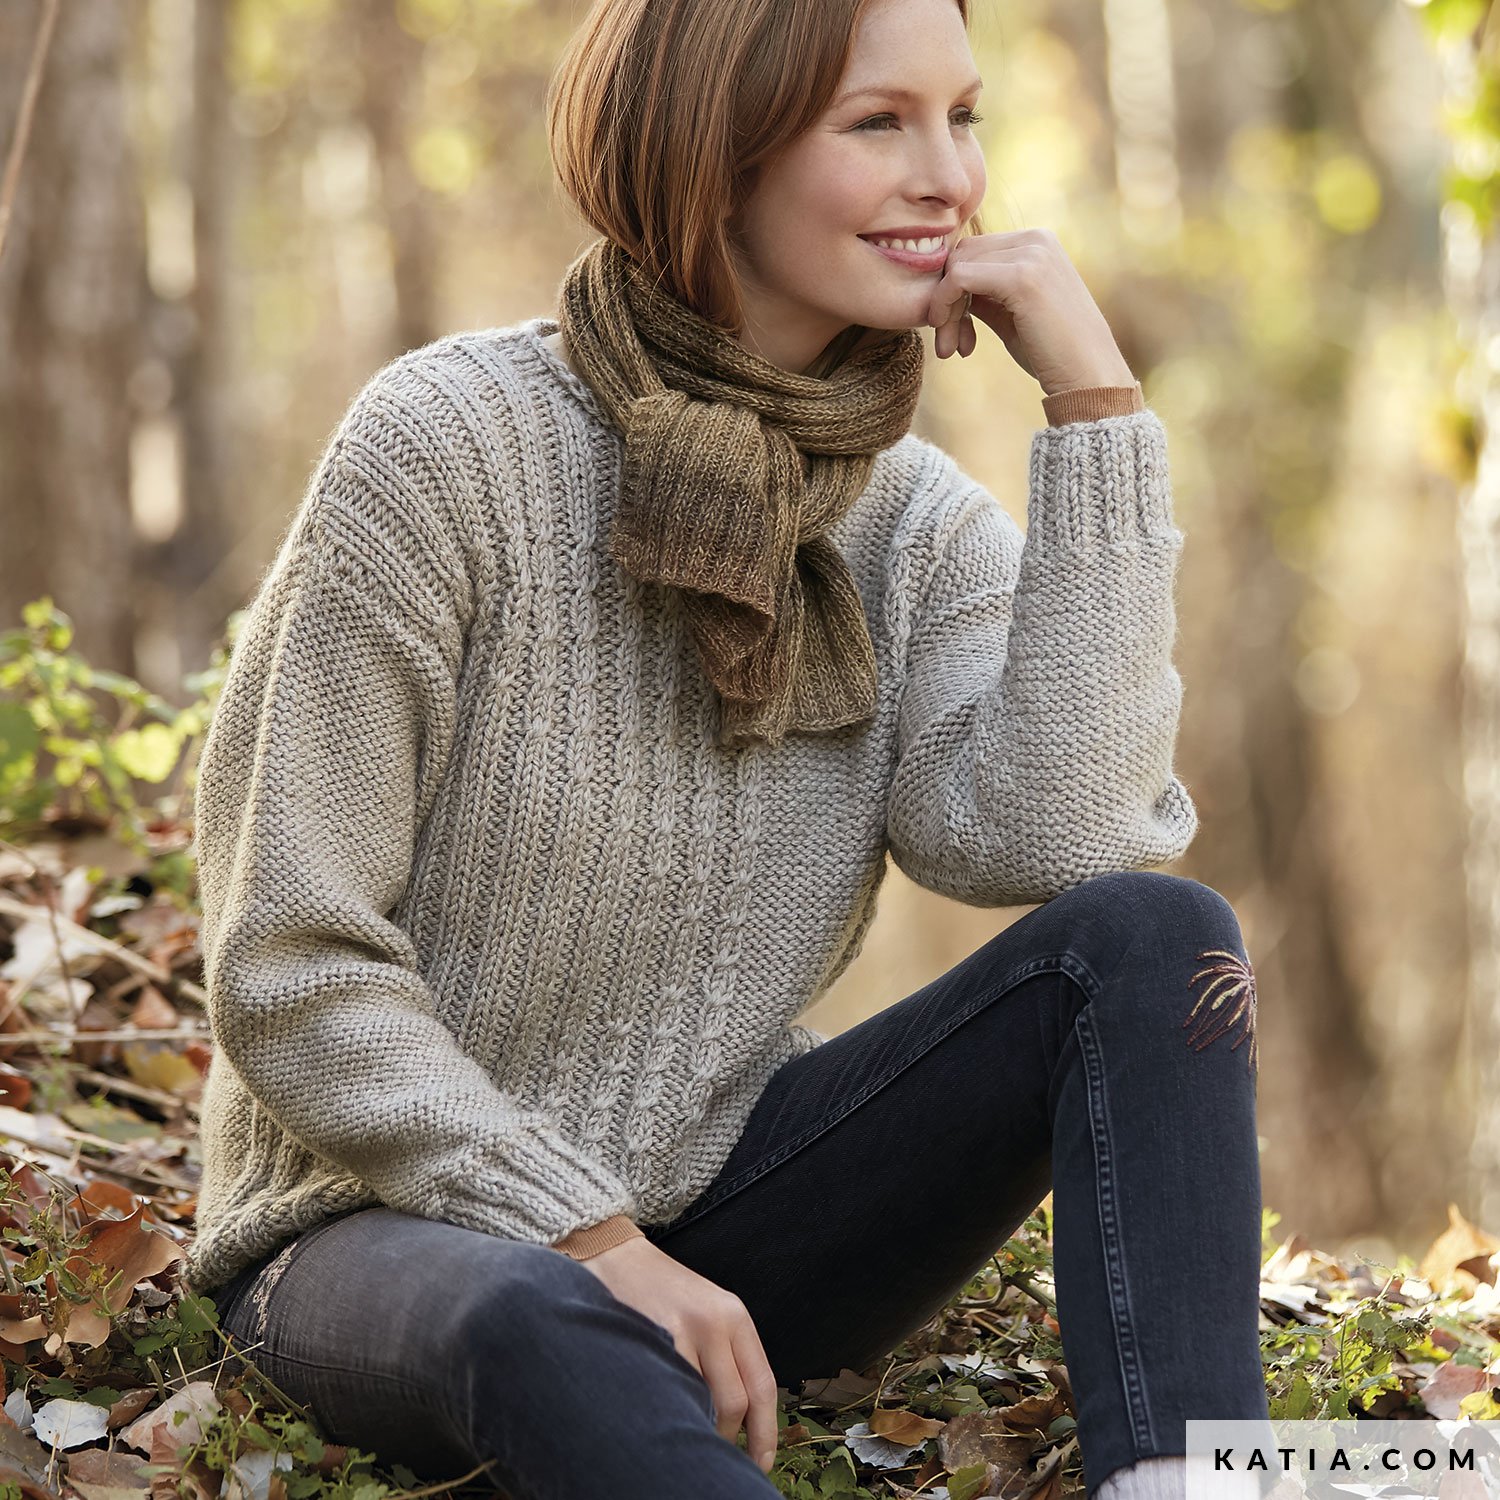 Pullover Damen Herbst Winter Modelle Anleitungen Katia Com